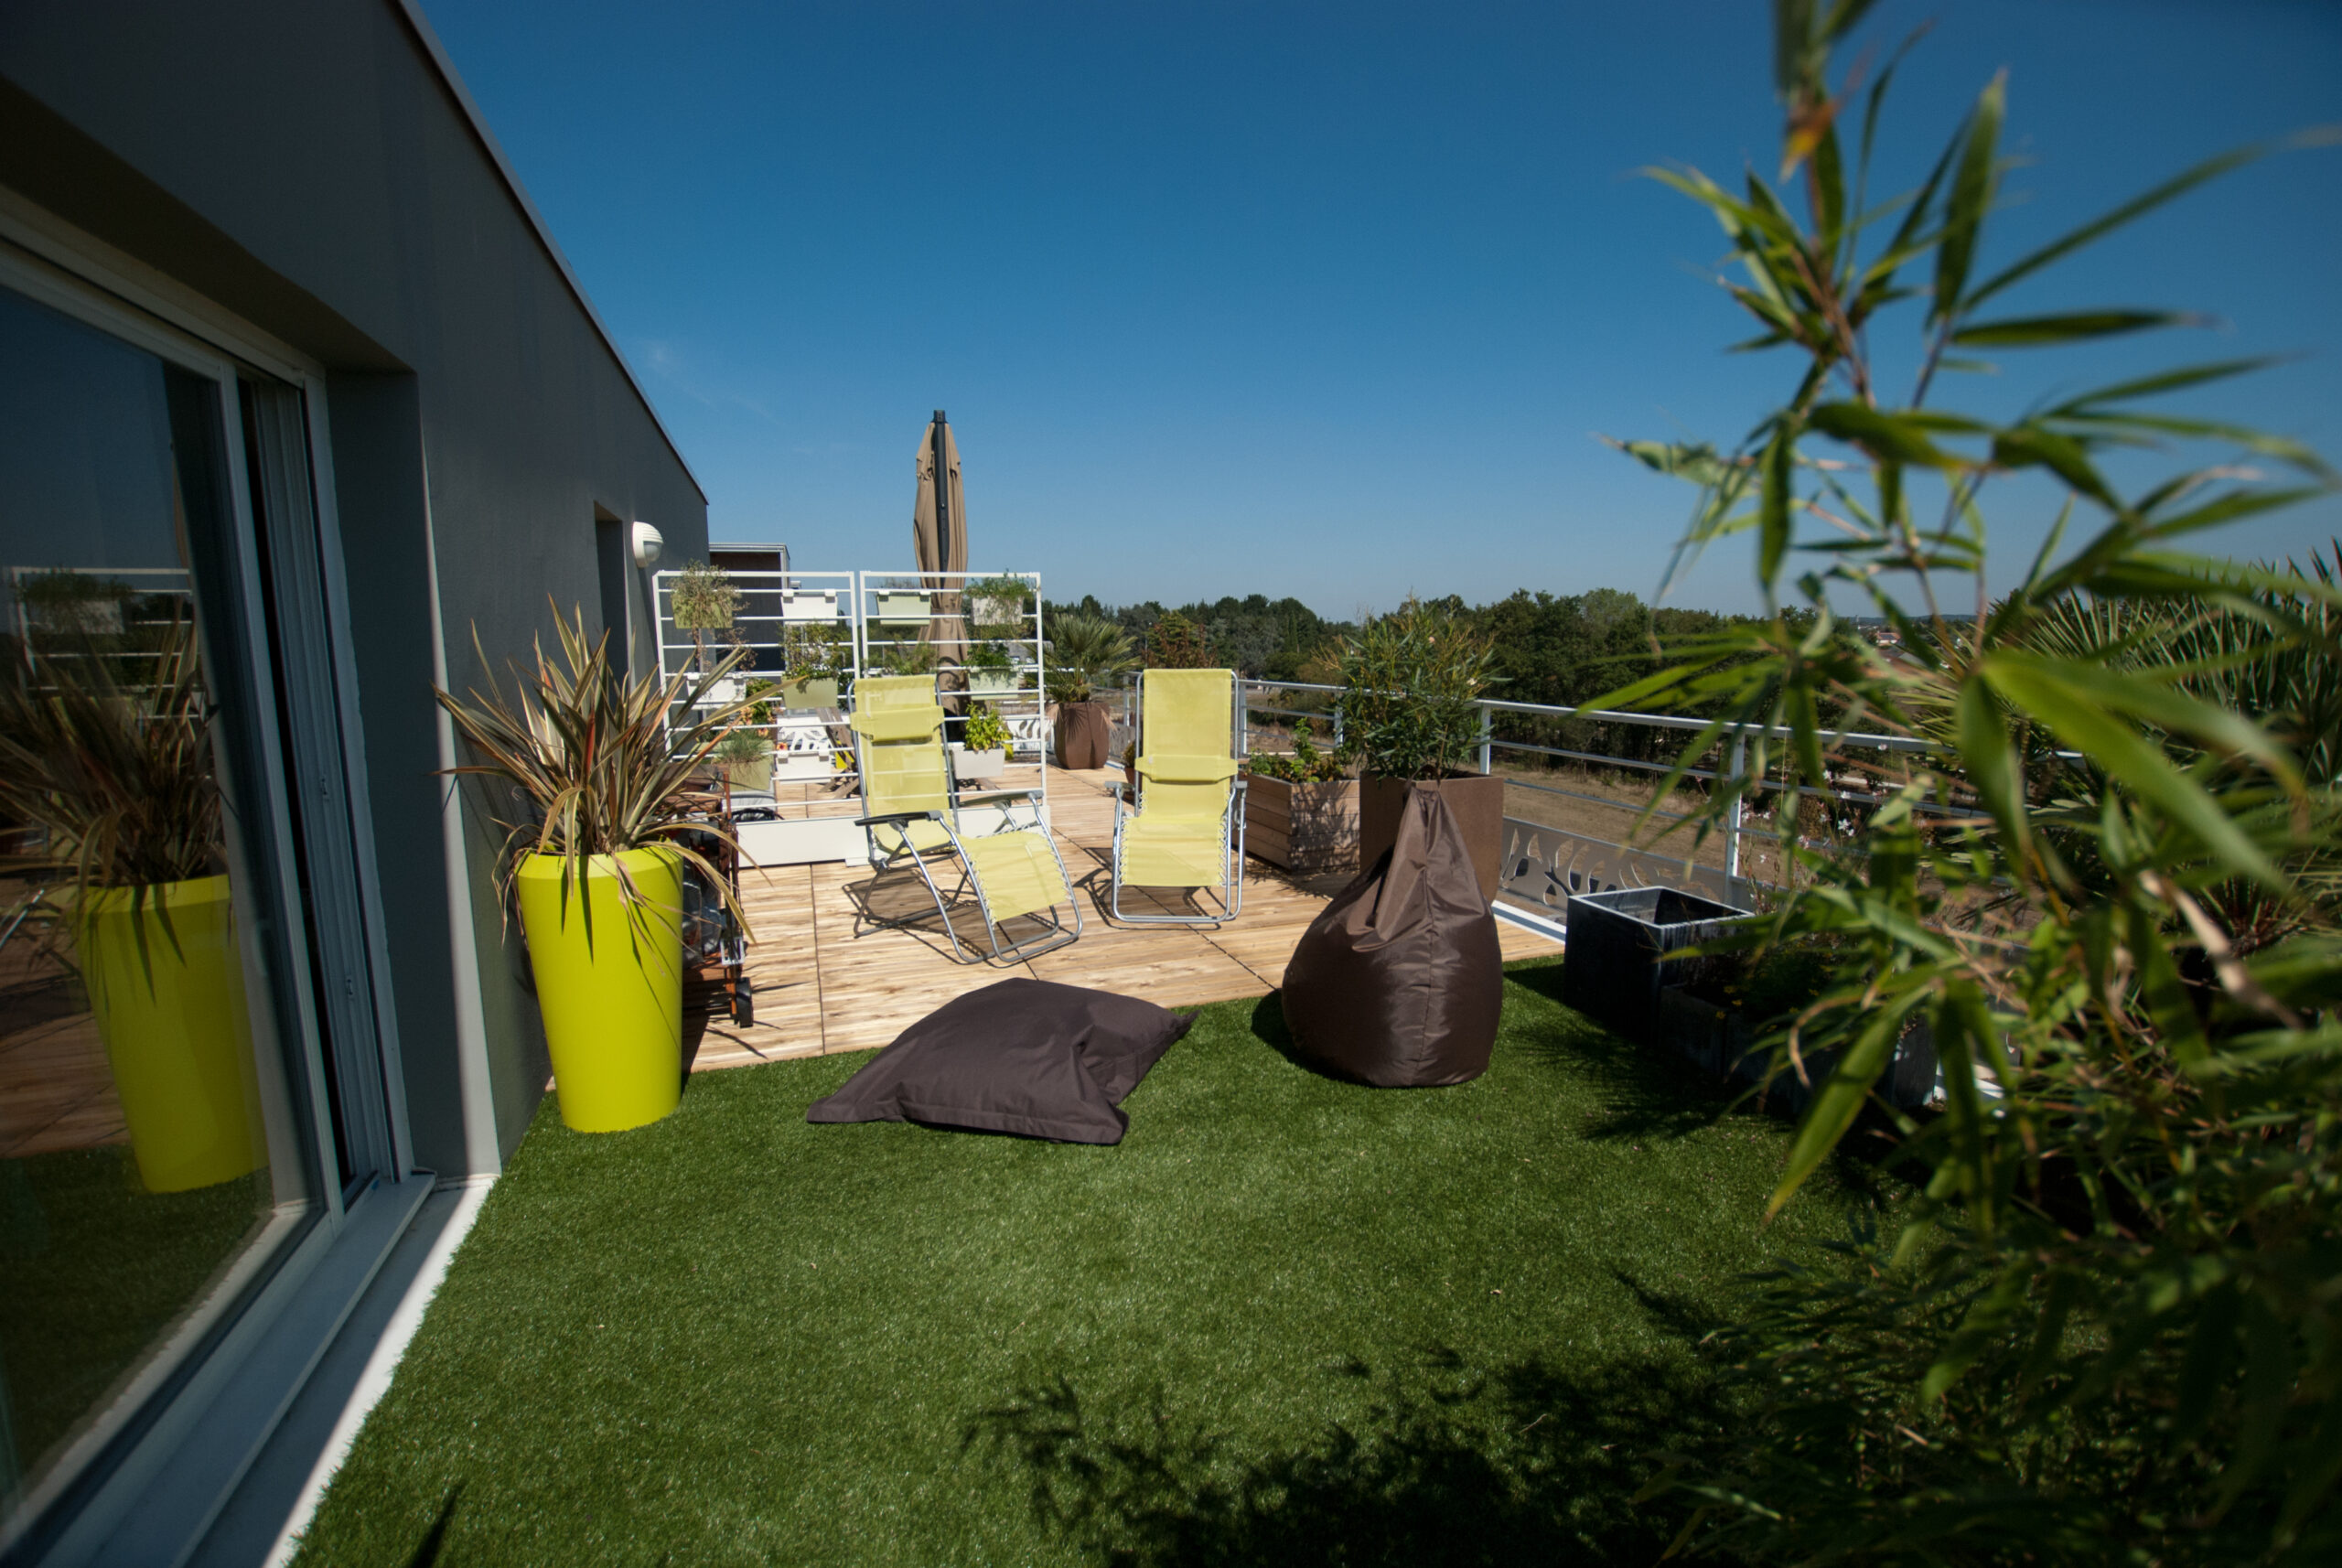 gazon synthétique sur terrasse, séparation en deux espaces distinct, plantes et pots, chamaerops